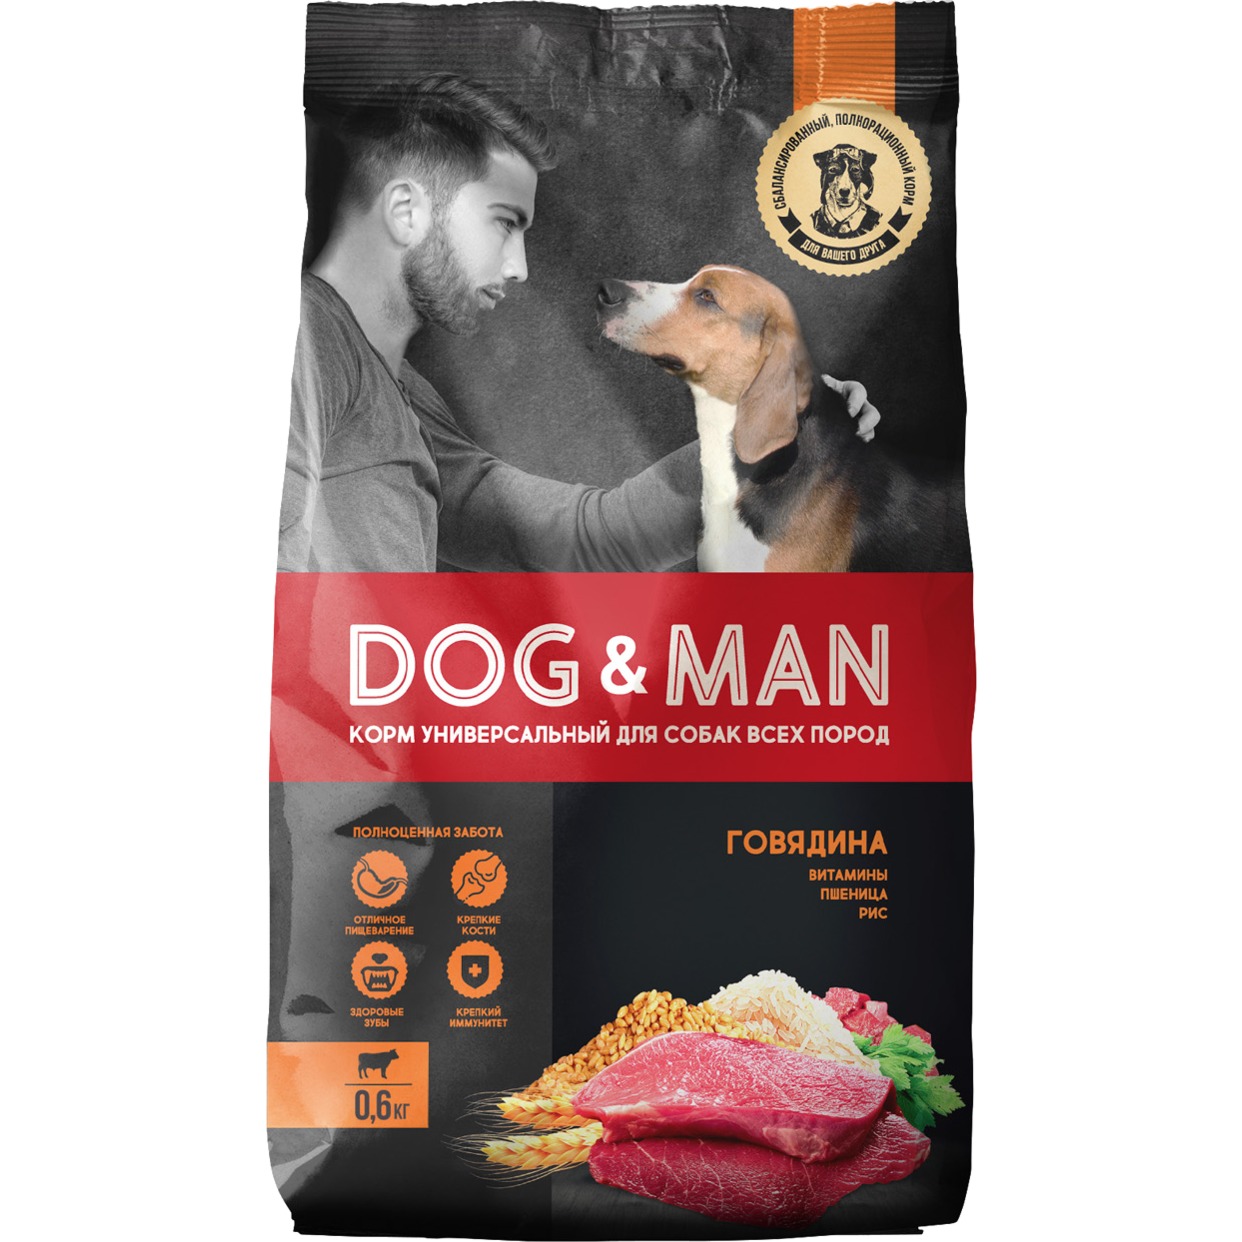 Dog&Man*, Корм сухой полнорационный универсальный для собак всех пород с говядиной , 0,6 кг по акции в Пятерочке